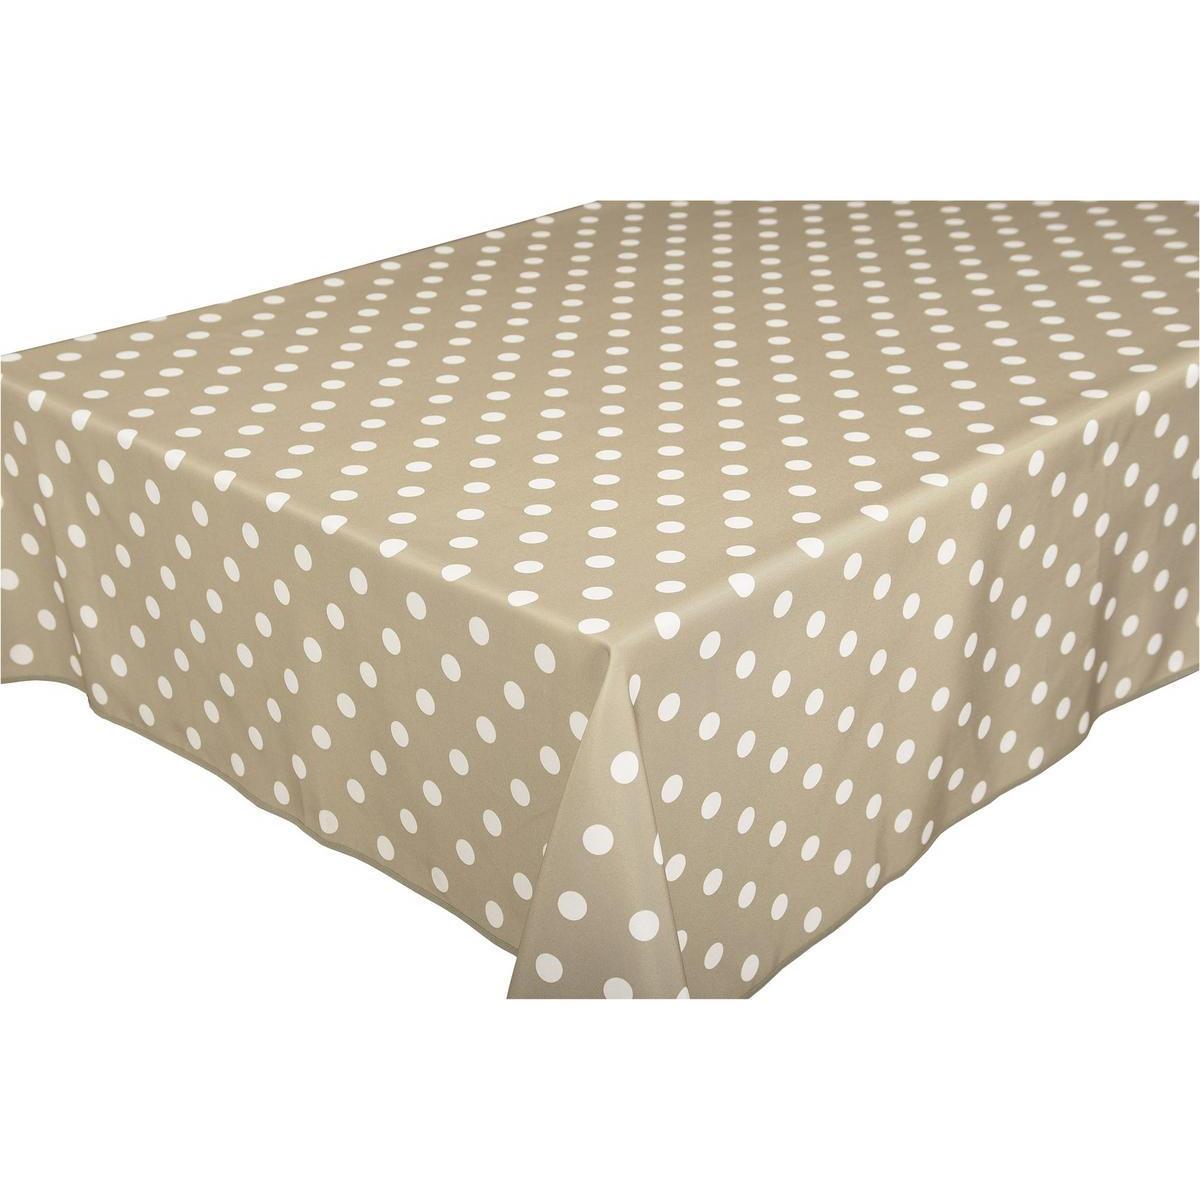 Toile cirée rectangulaire - 100 % Polyester - 145 x 300 cm - Marron taupe et blanc